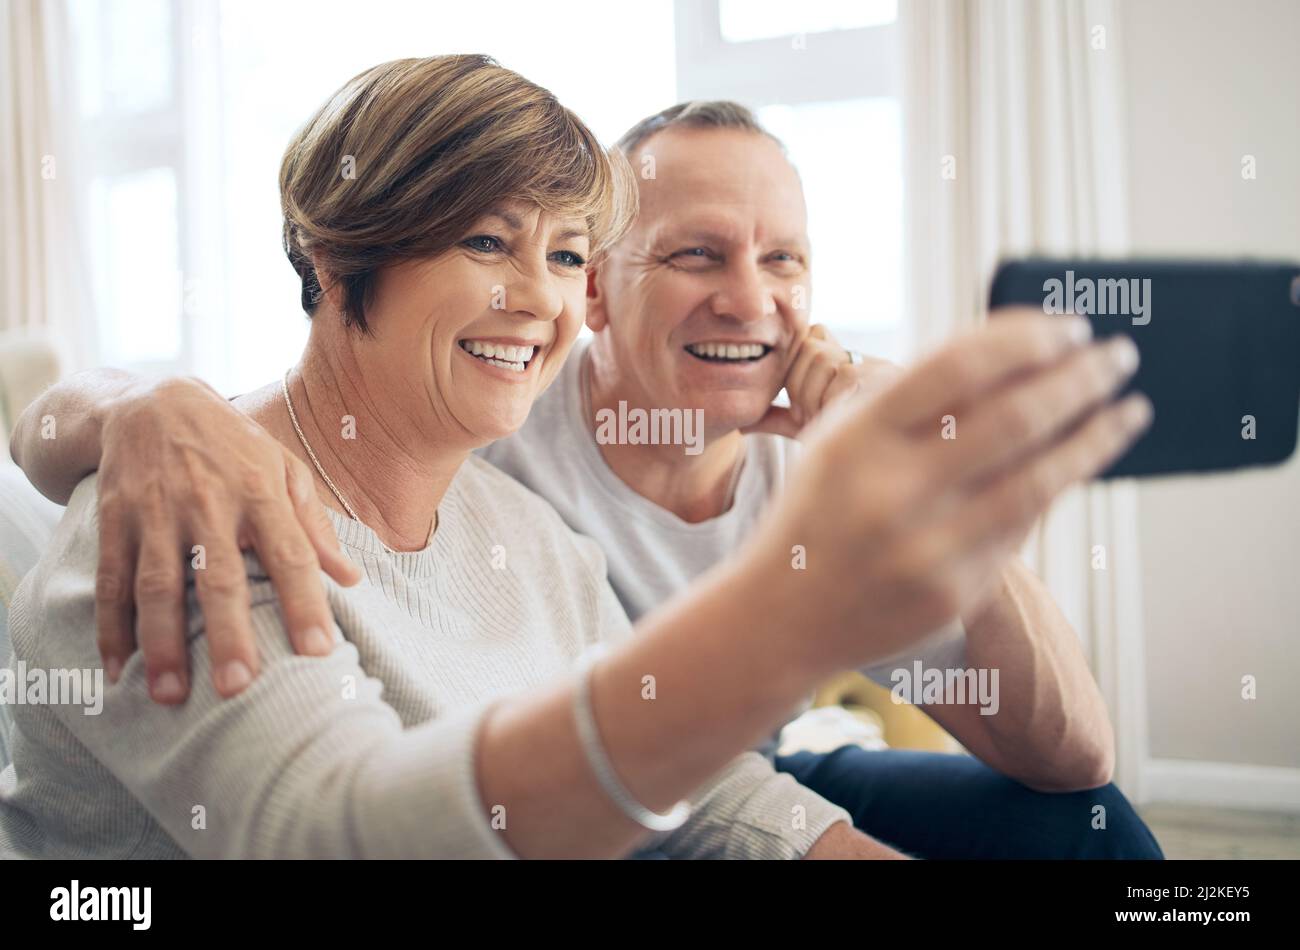 Dein Lächeln erhellt meine Welt. Aufnahme eines reifen Paares, das Selfies macht. Stockfoto